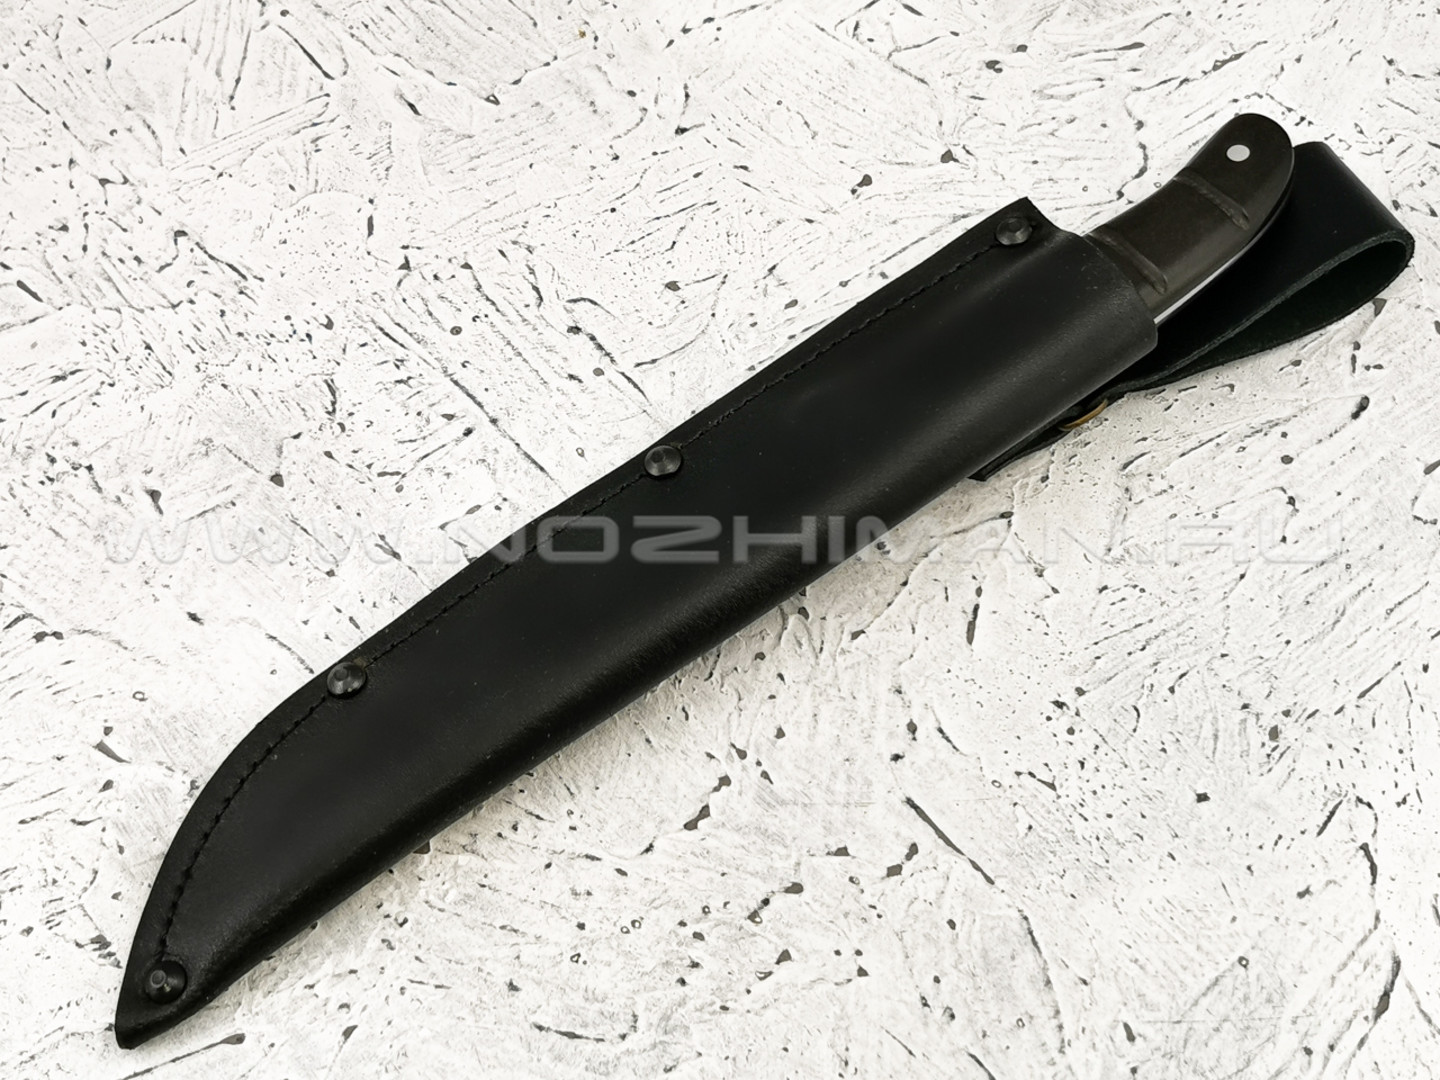 Нож филейный "Смак-2" сталь D2, рукоять граб (Титов & Солдатова)